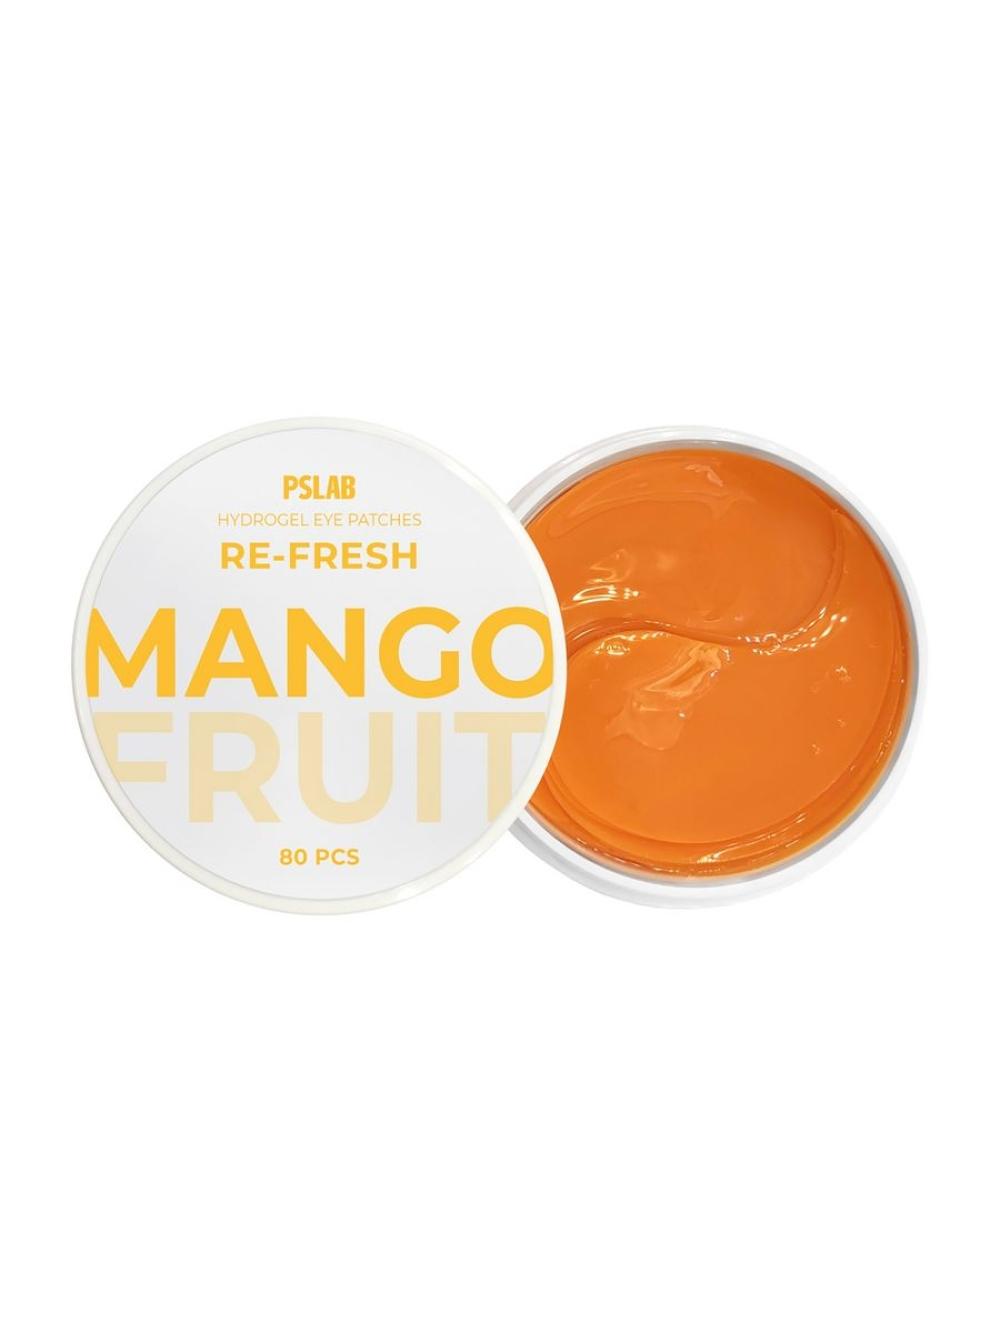 Патчи для моментального увлажнения с экстрактом манго Patch Re-fresh "PSLAB",80шт